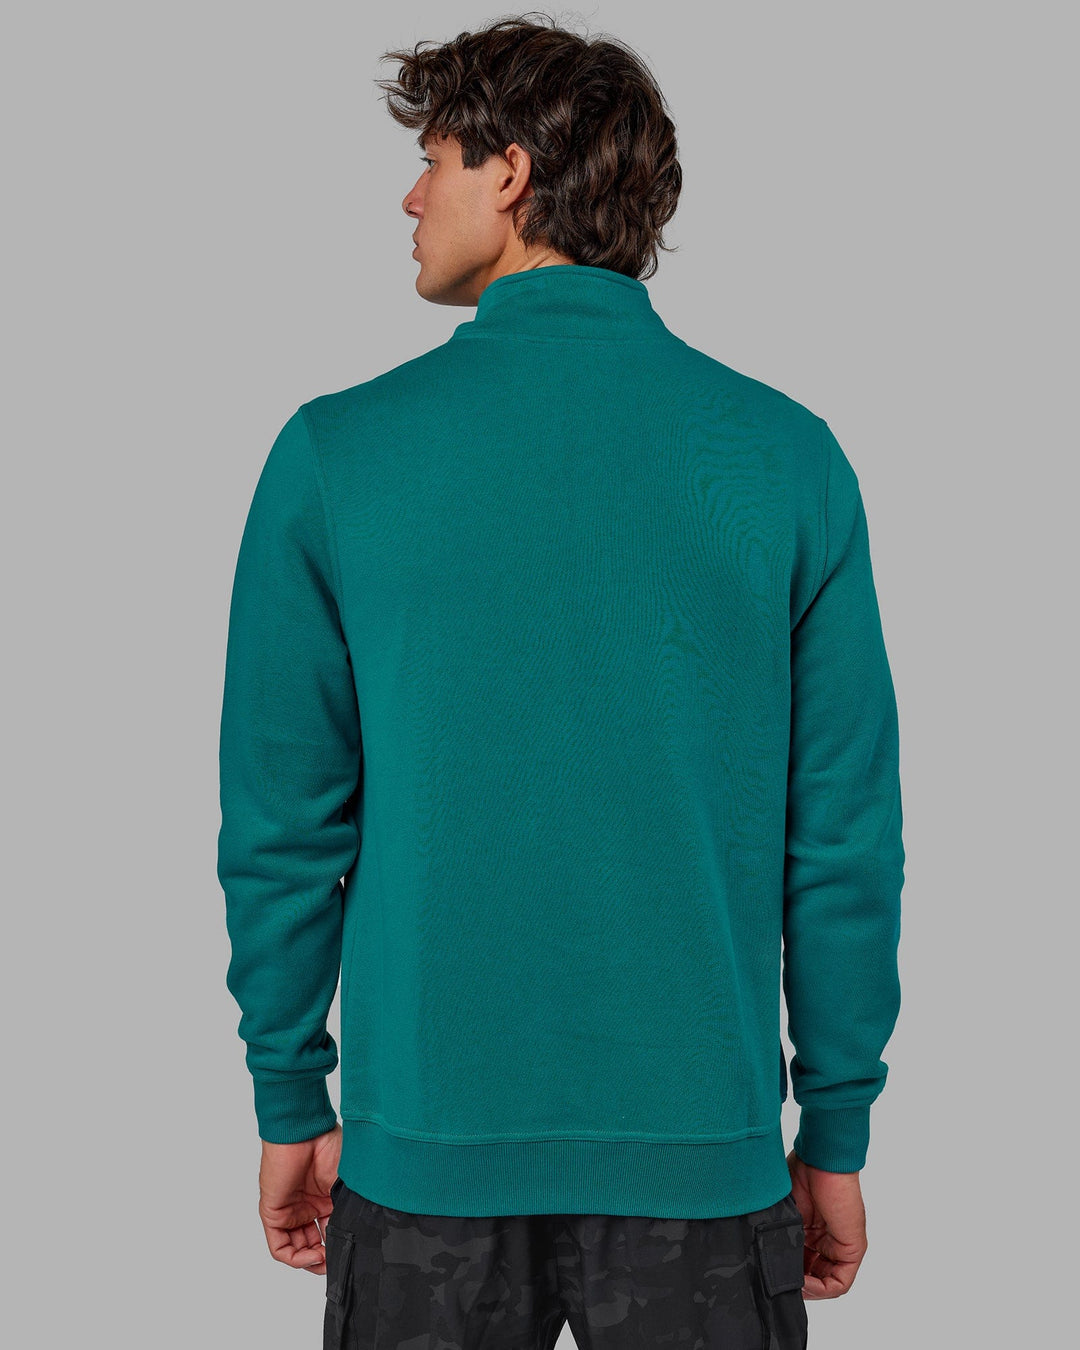 Man wearing Unisex Fundamental 1/4 Zip Sweater - Deep Lake